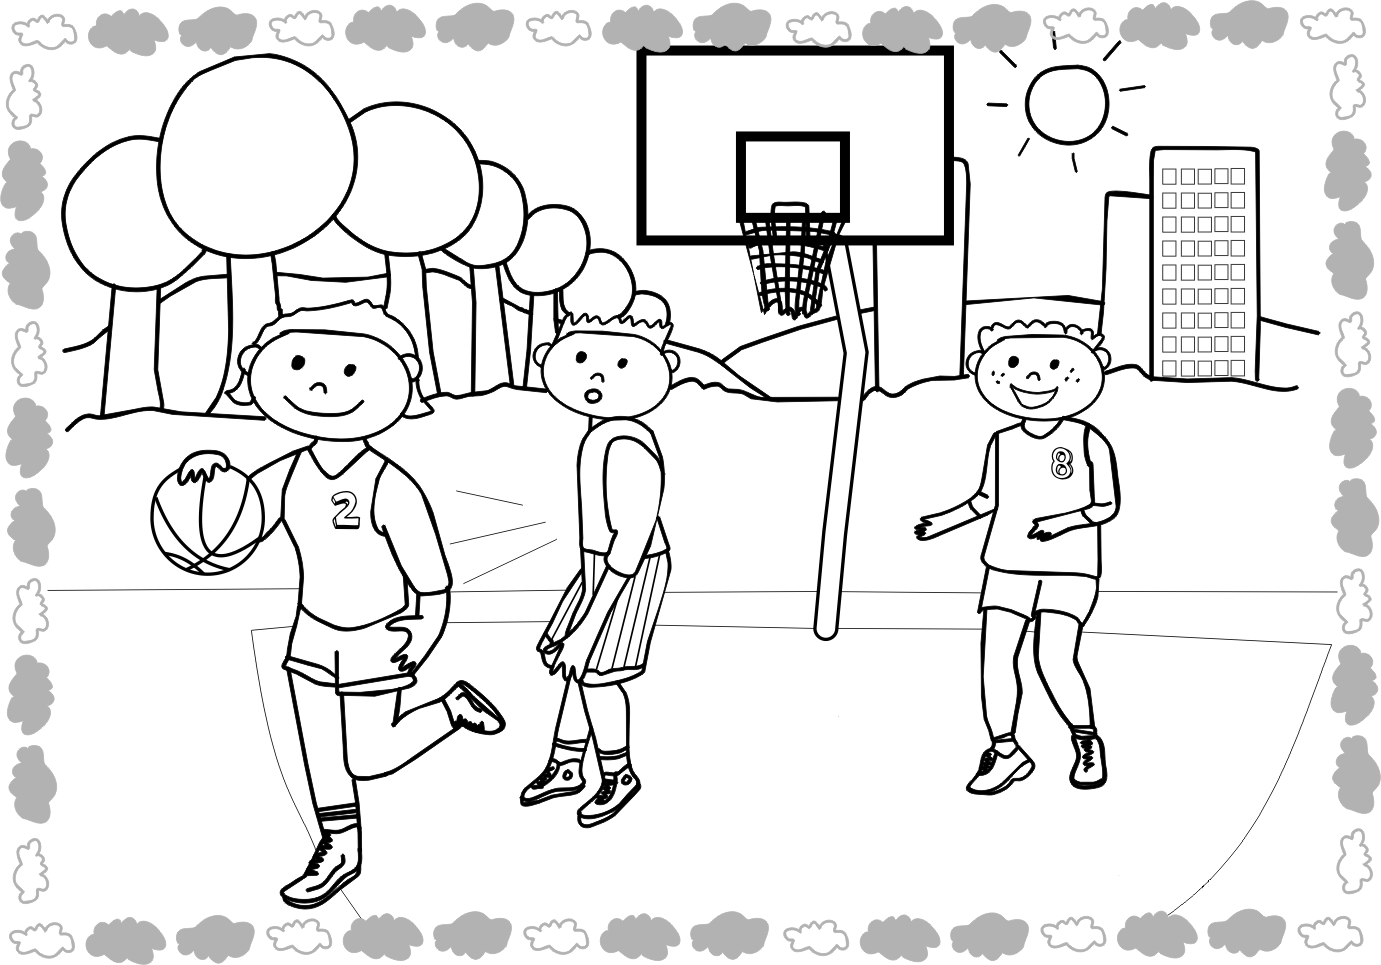 Раскраска с баскетболистом и мячом (баскетбол)